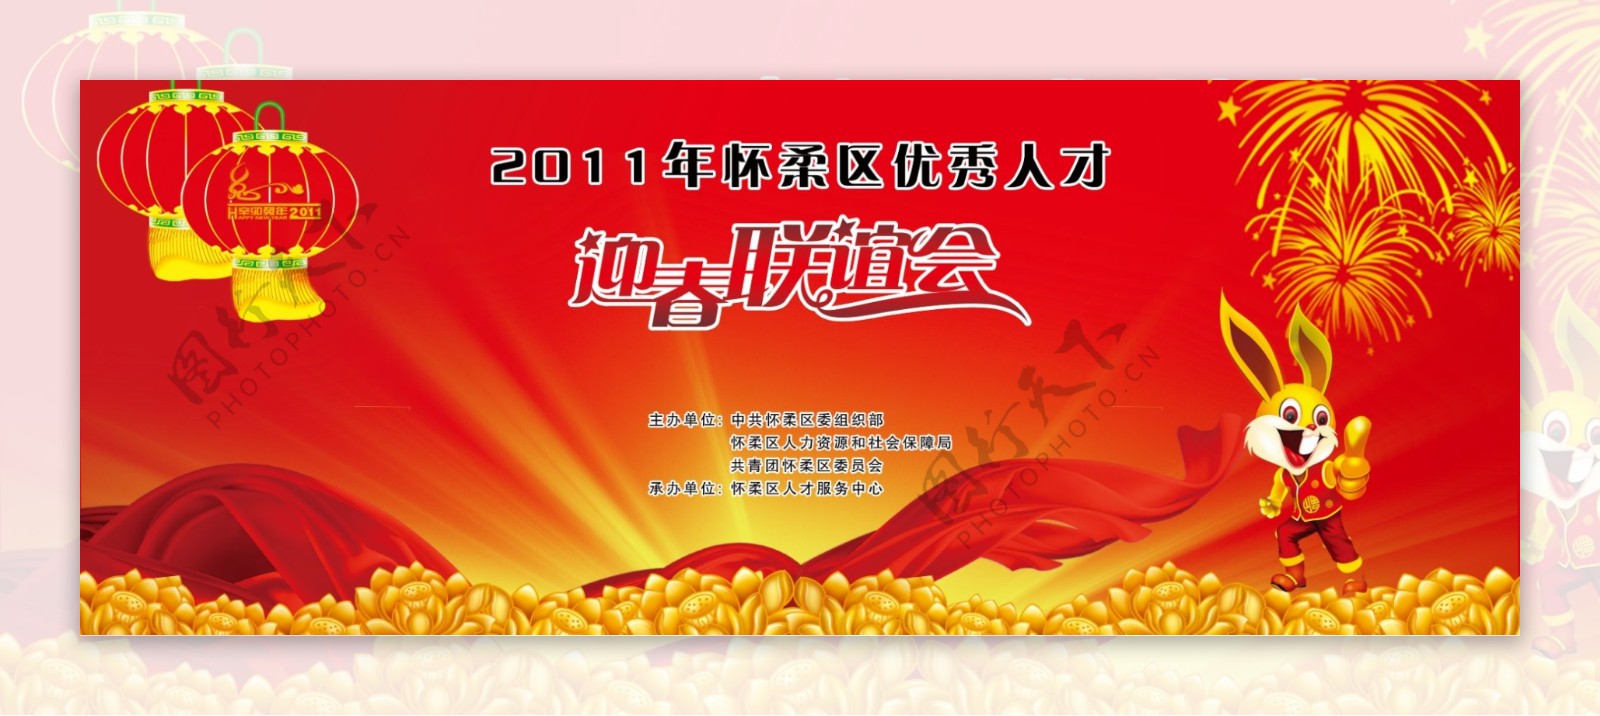 2011春节联欢晚会背景图片